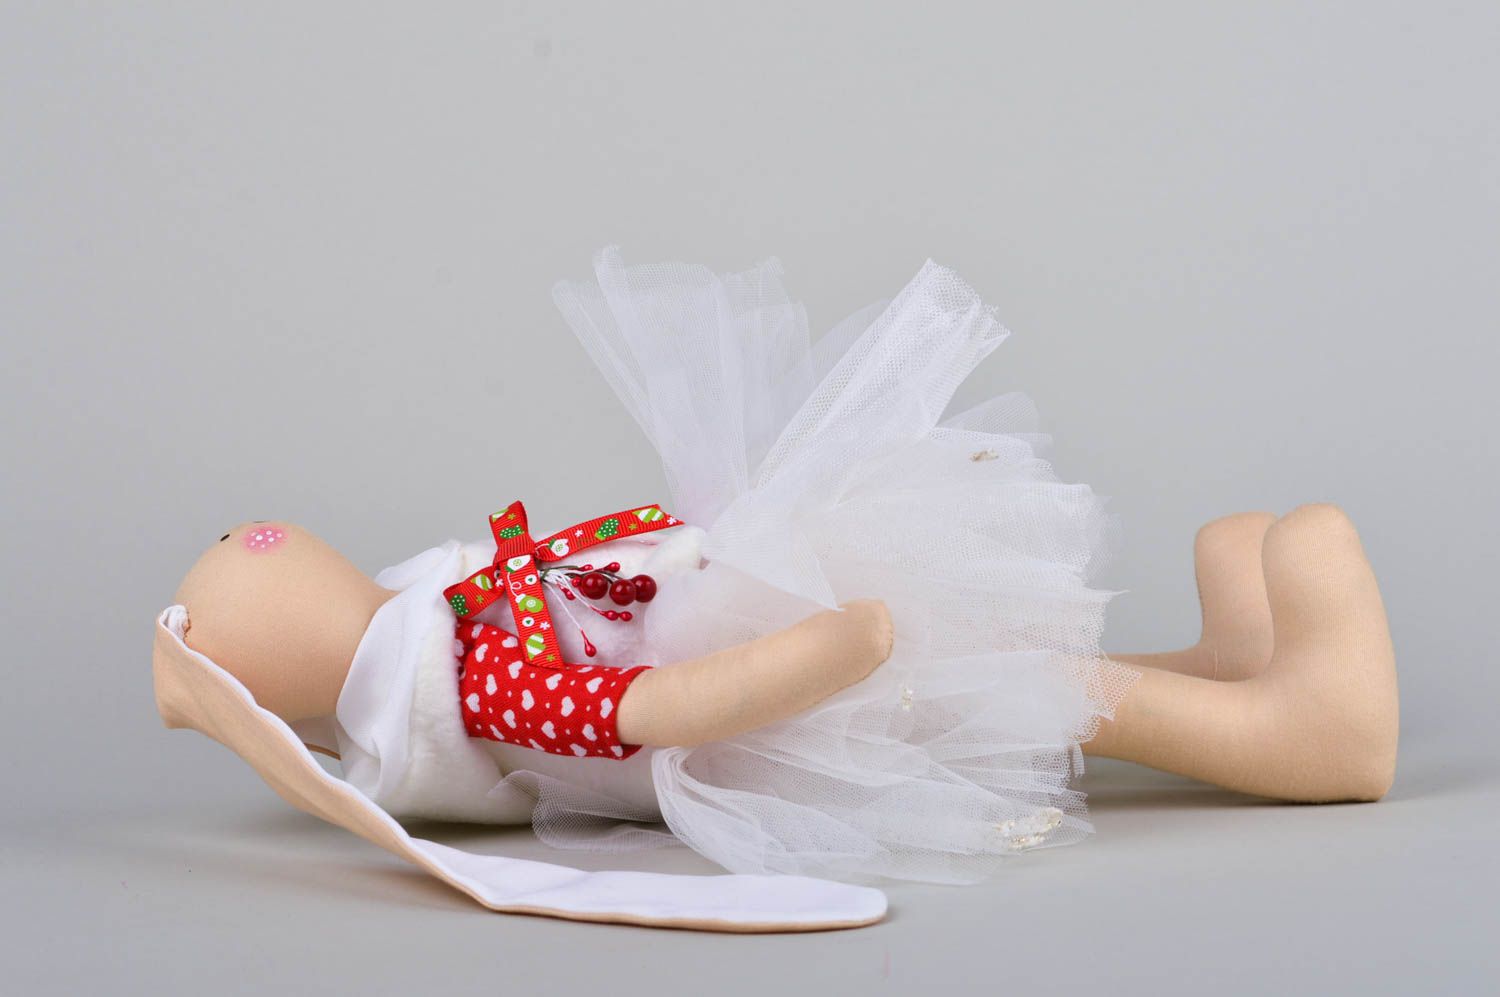 Spielzeug Hase handmade im Rock Haus Deko Geschenk für Kinder stilvoll festlich foto 4